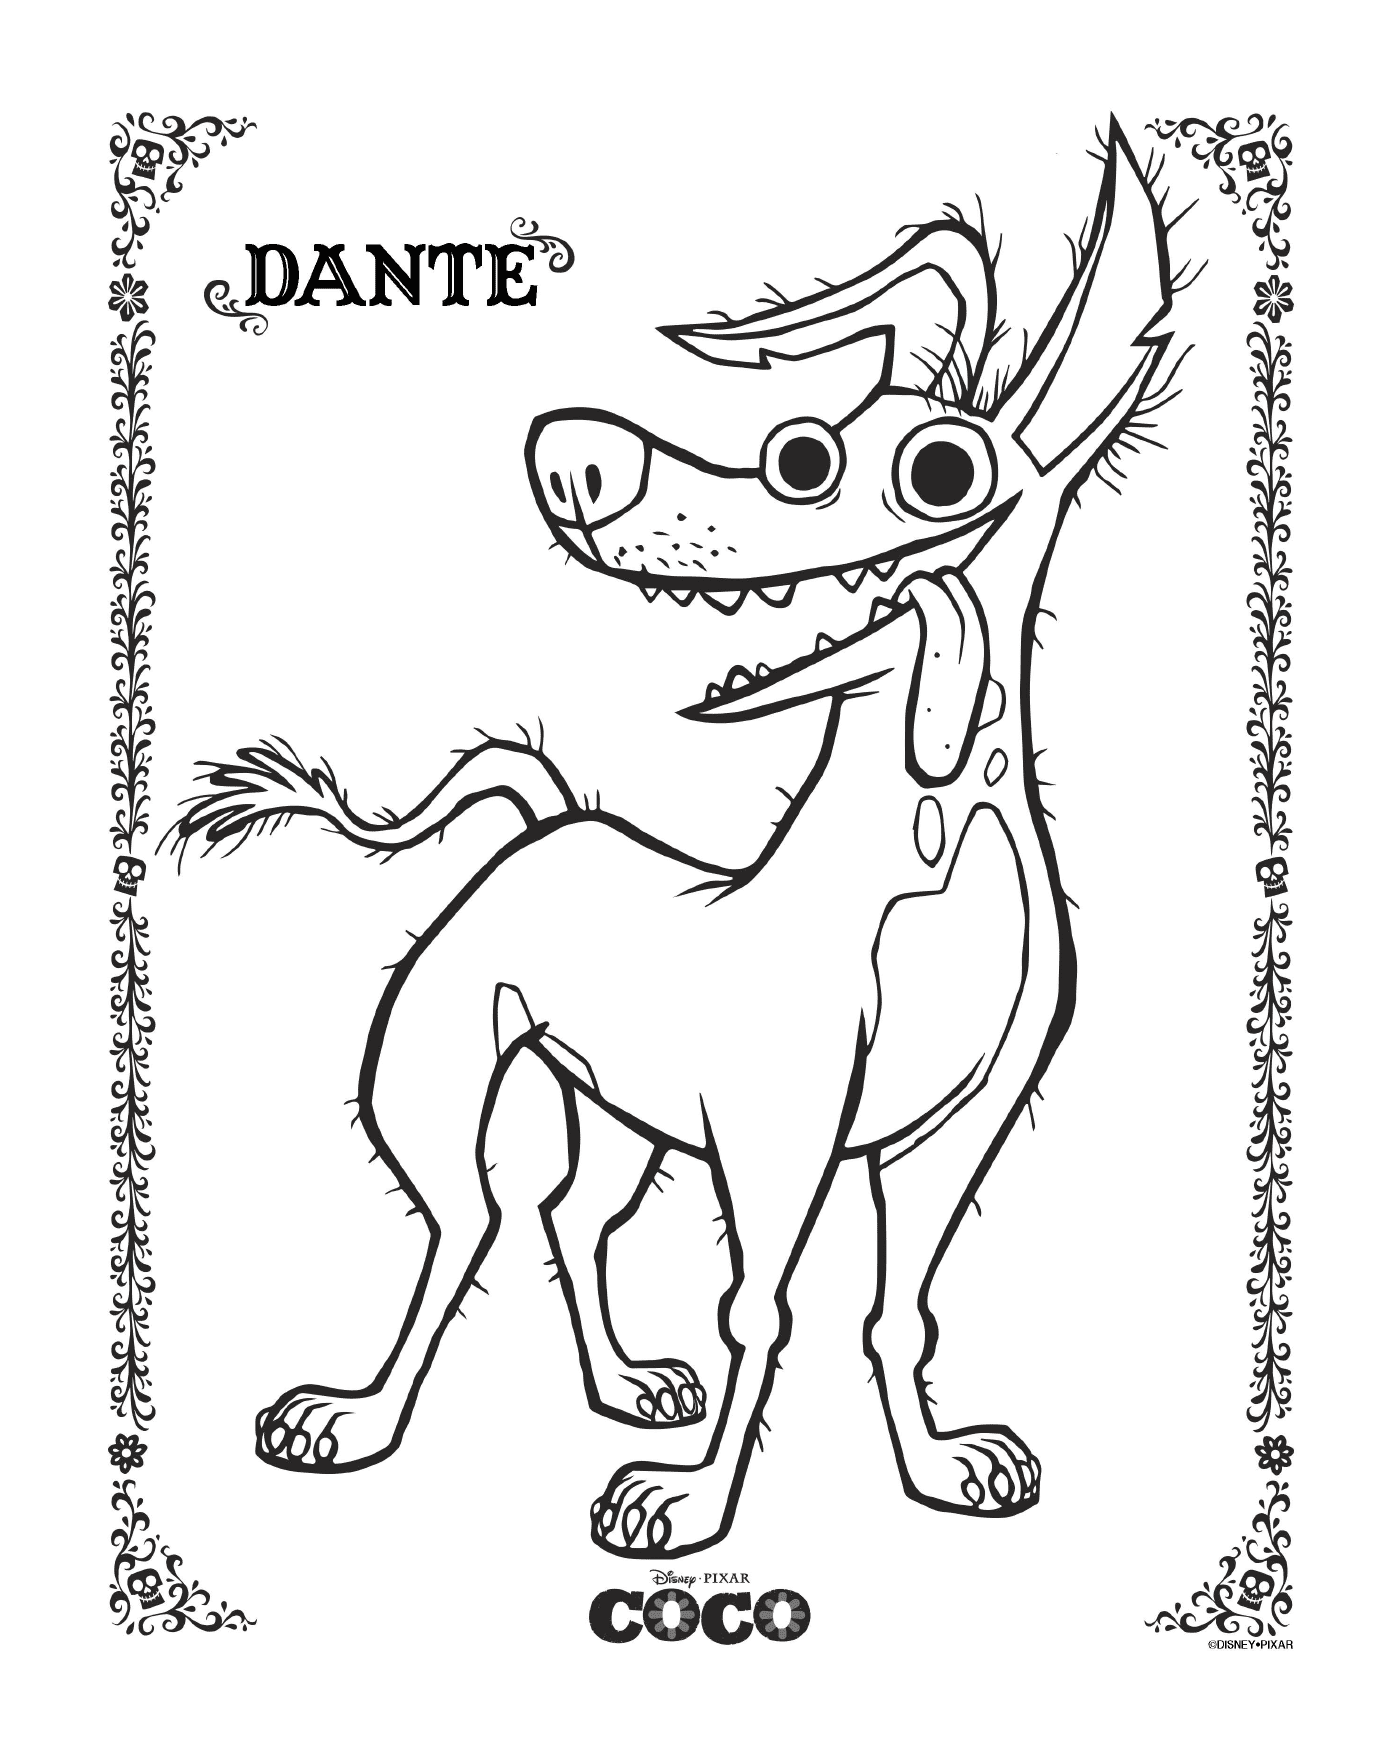  Dante 2 a Coco, Disney 